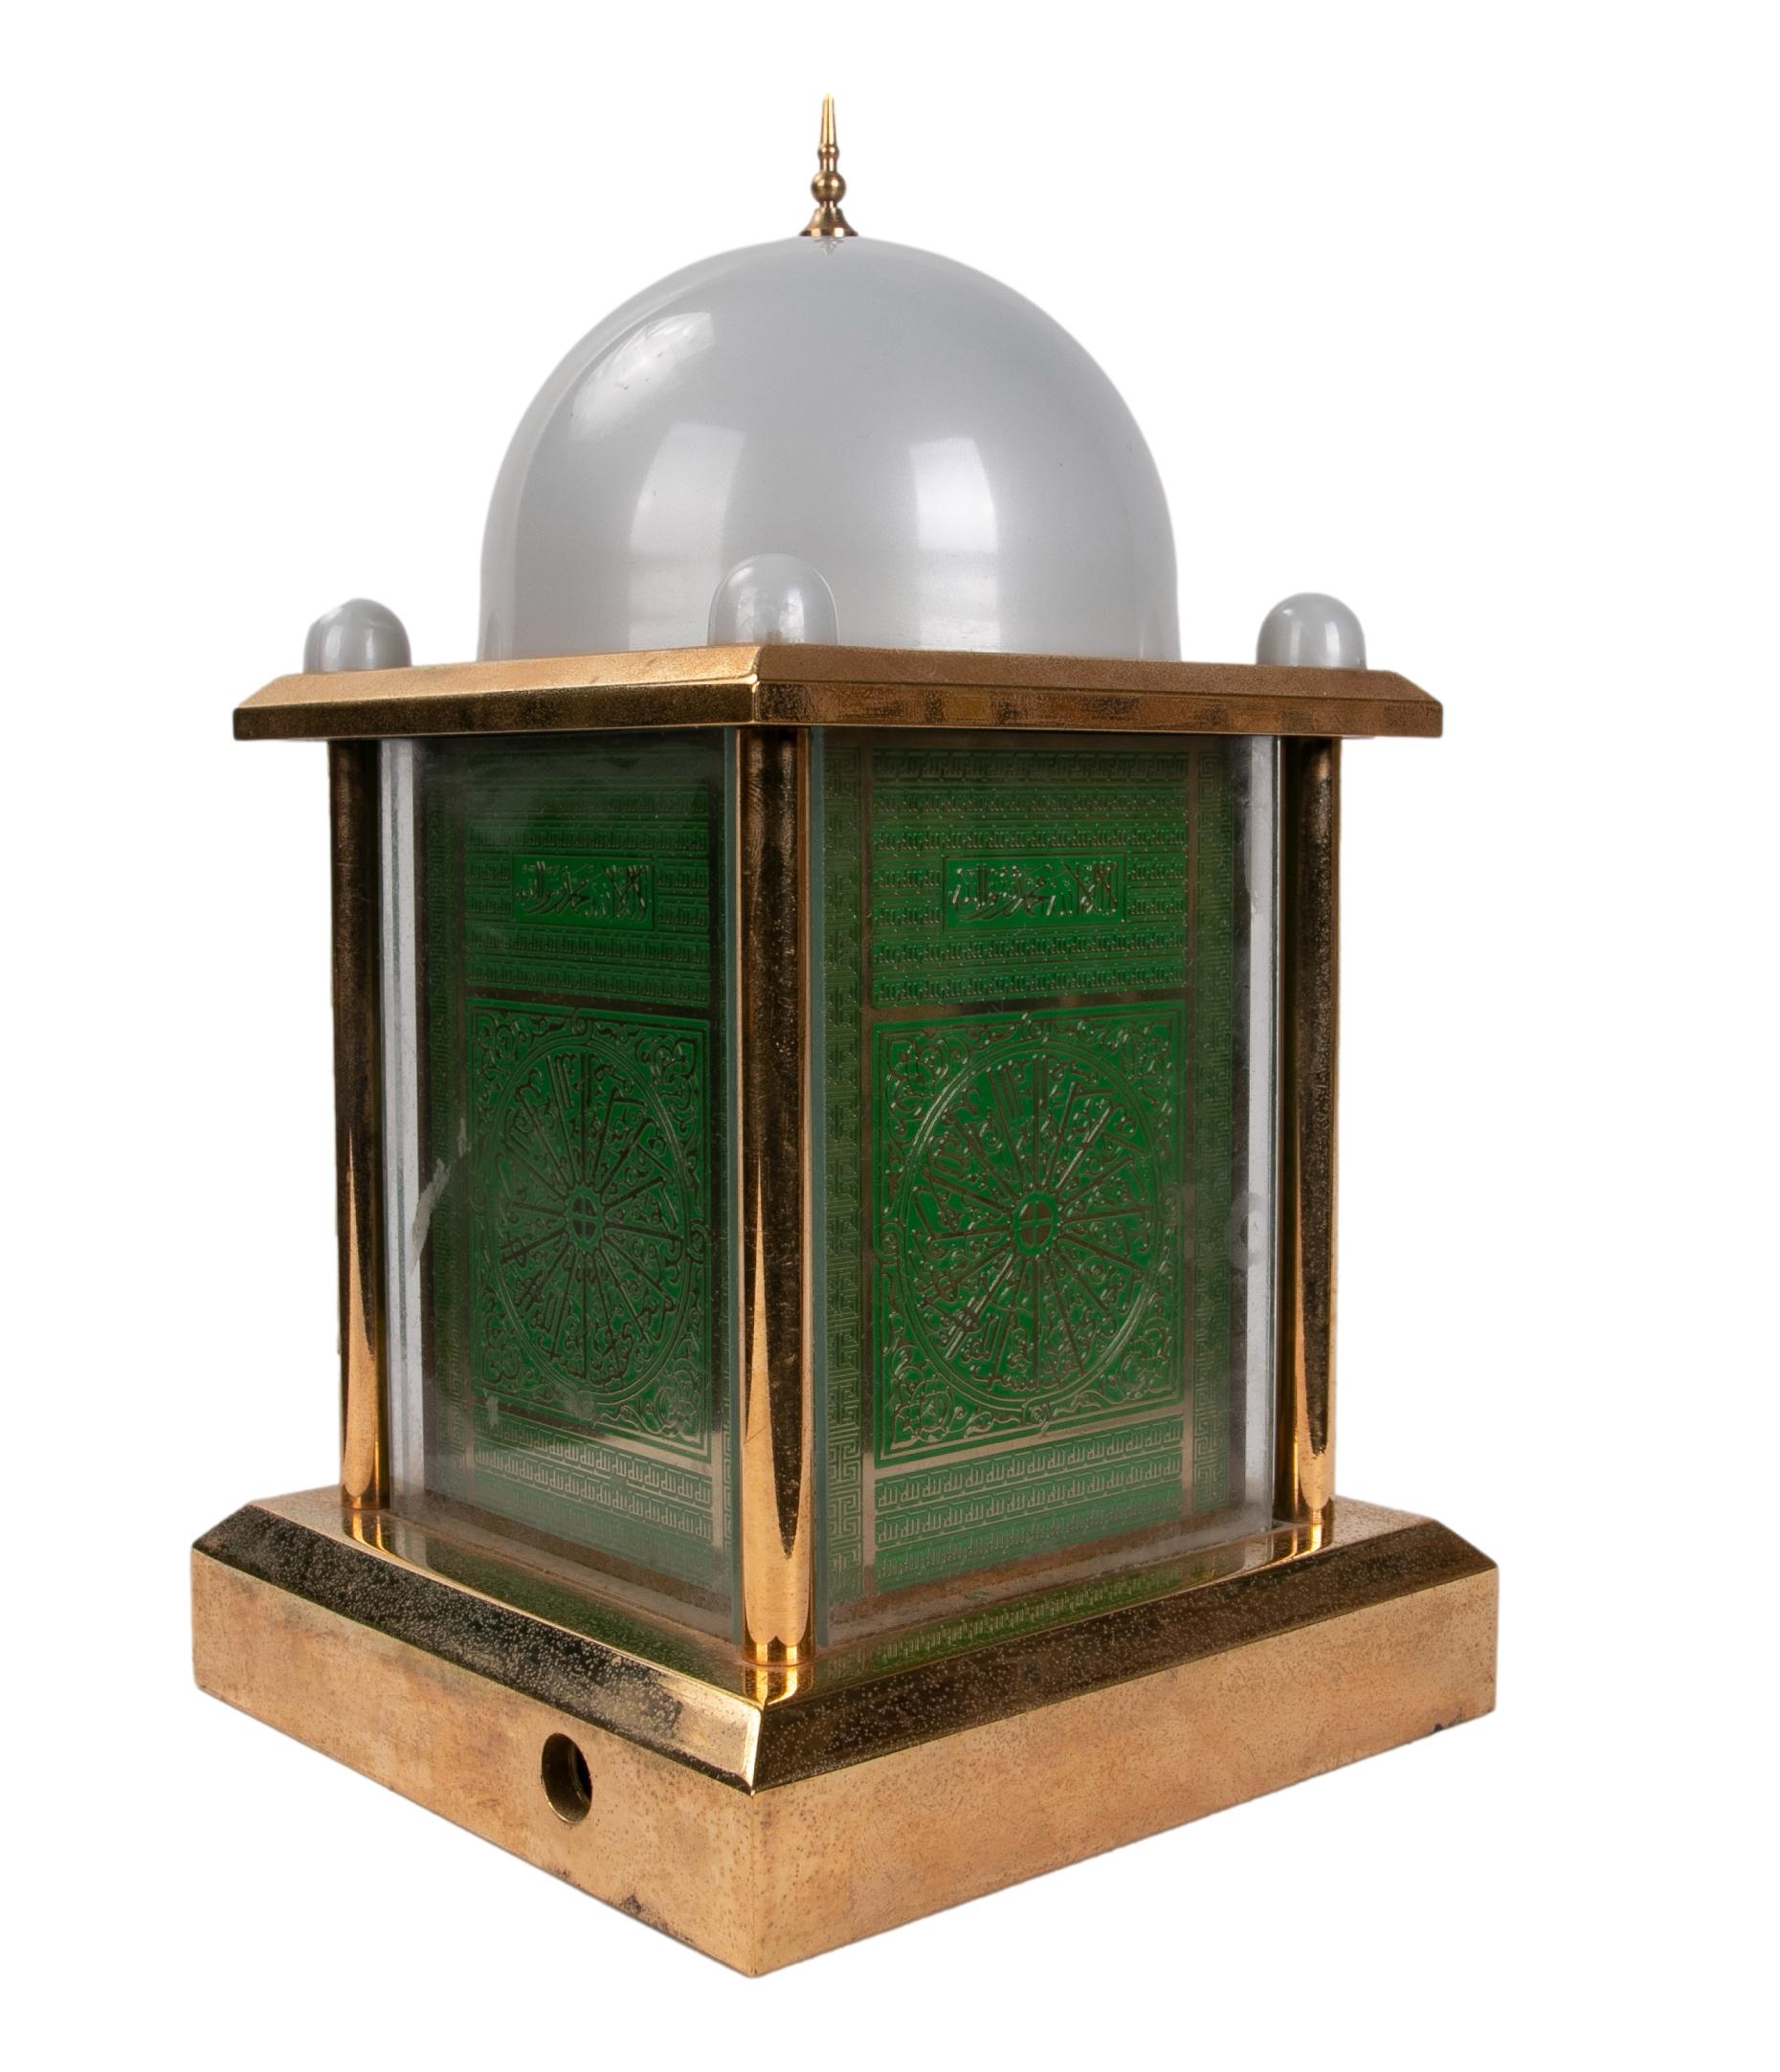 Elektronisches Gebetsgerät in Form eines metallenen Mekkas mit Tasten.